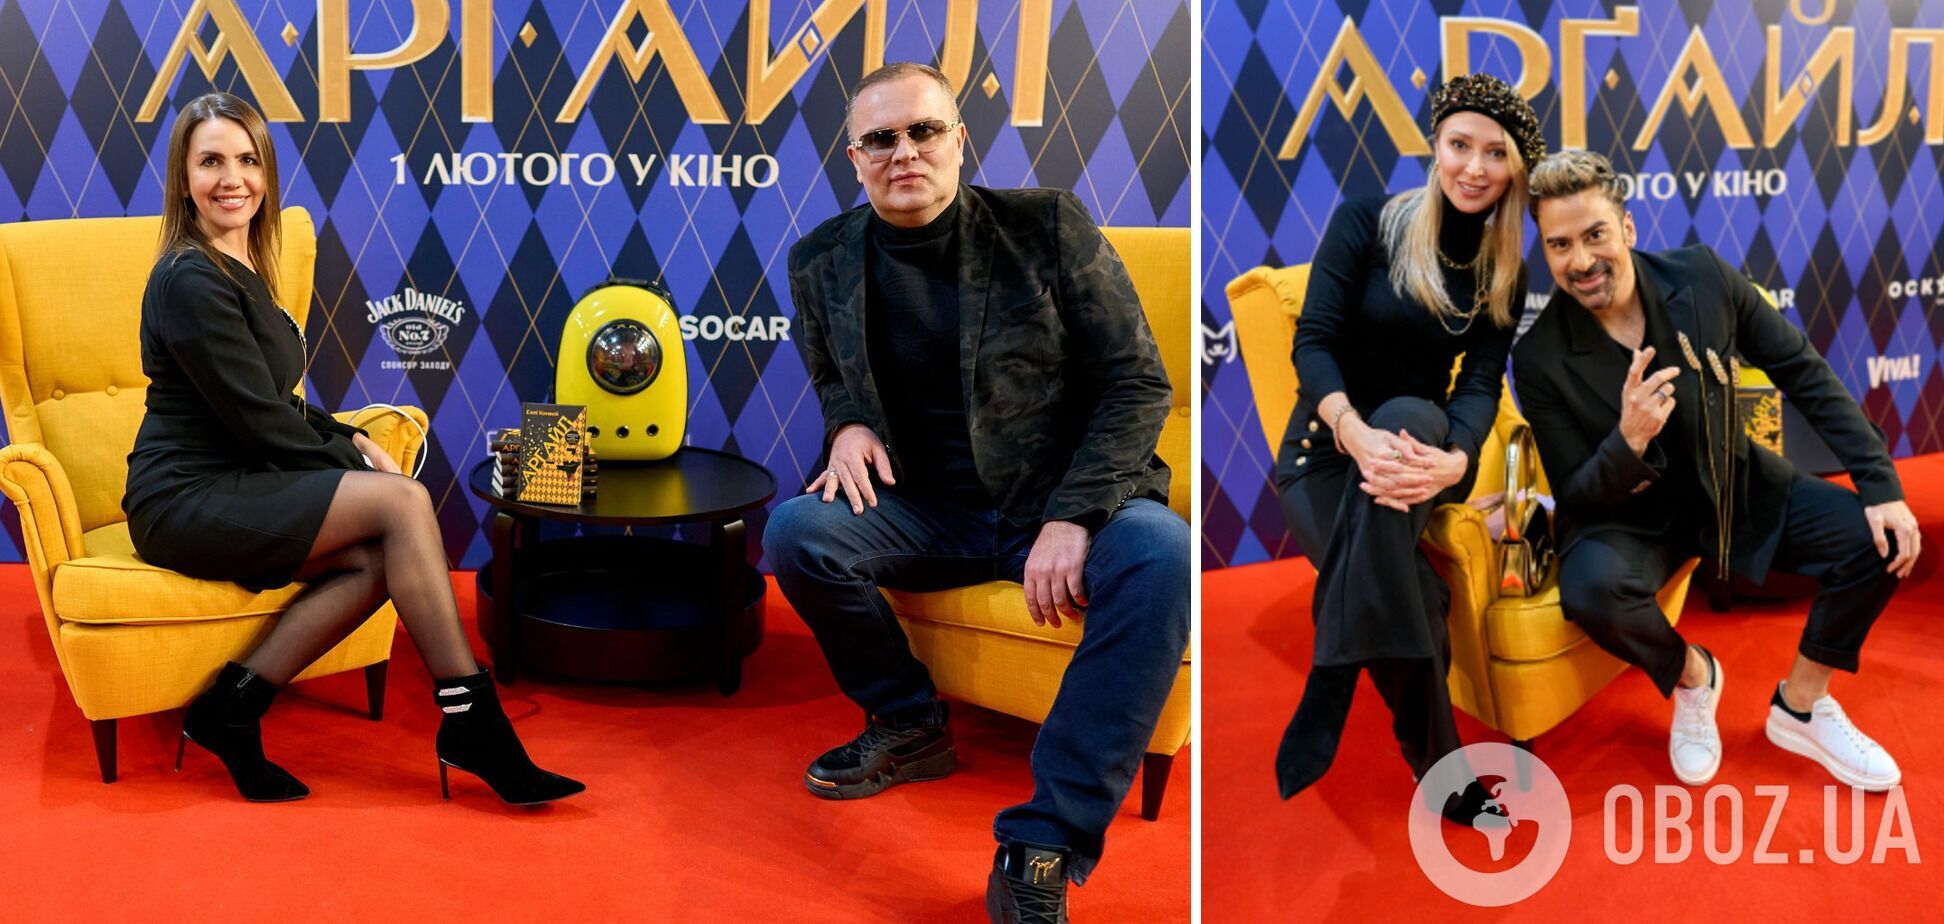 Как прошел допремьерный показ новой шпионской комедии "Аргайл" в Киеве